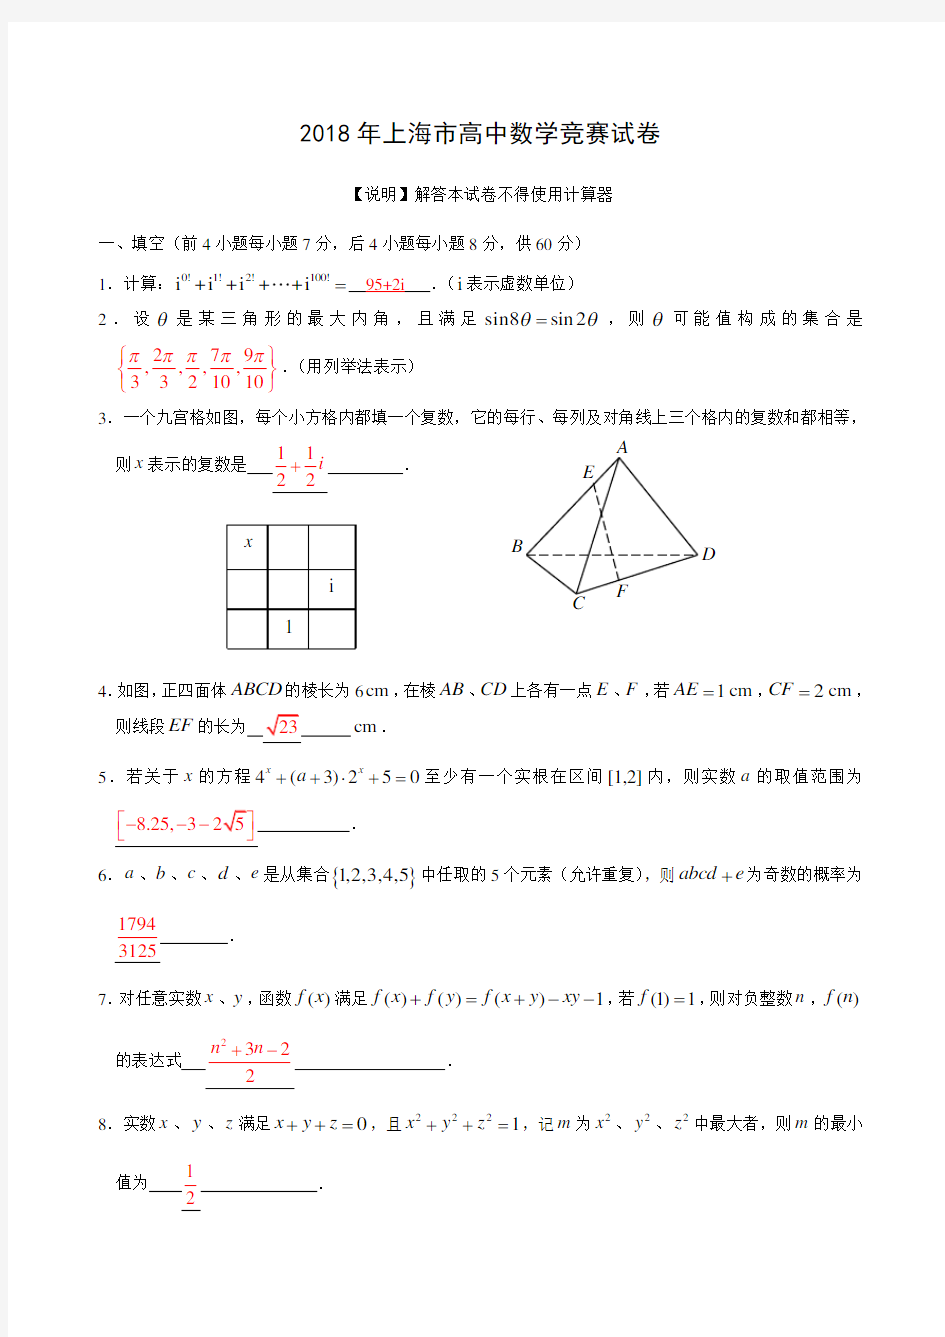 2018年上海市高中数学竞赛试卷及答案 精品